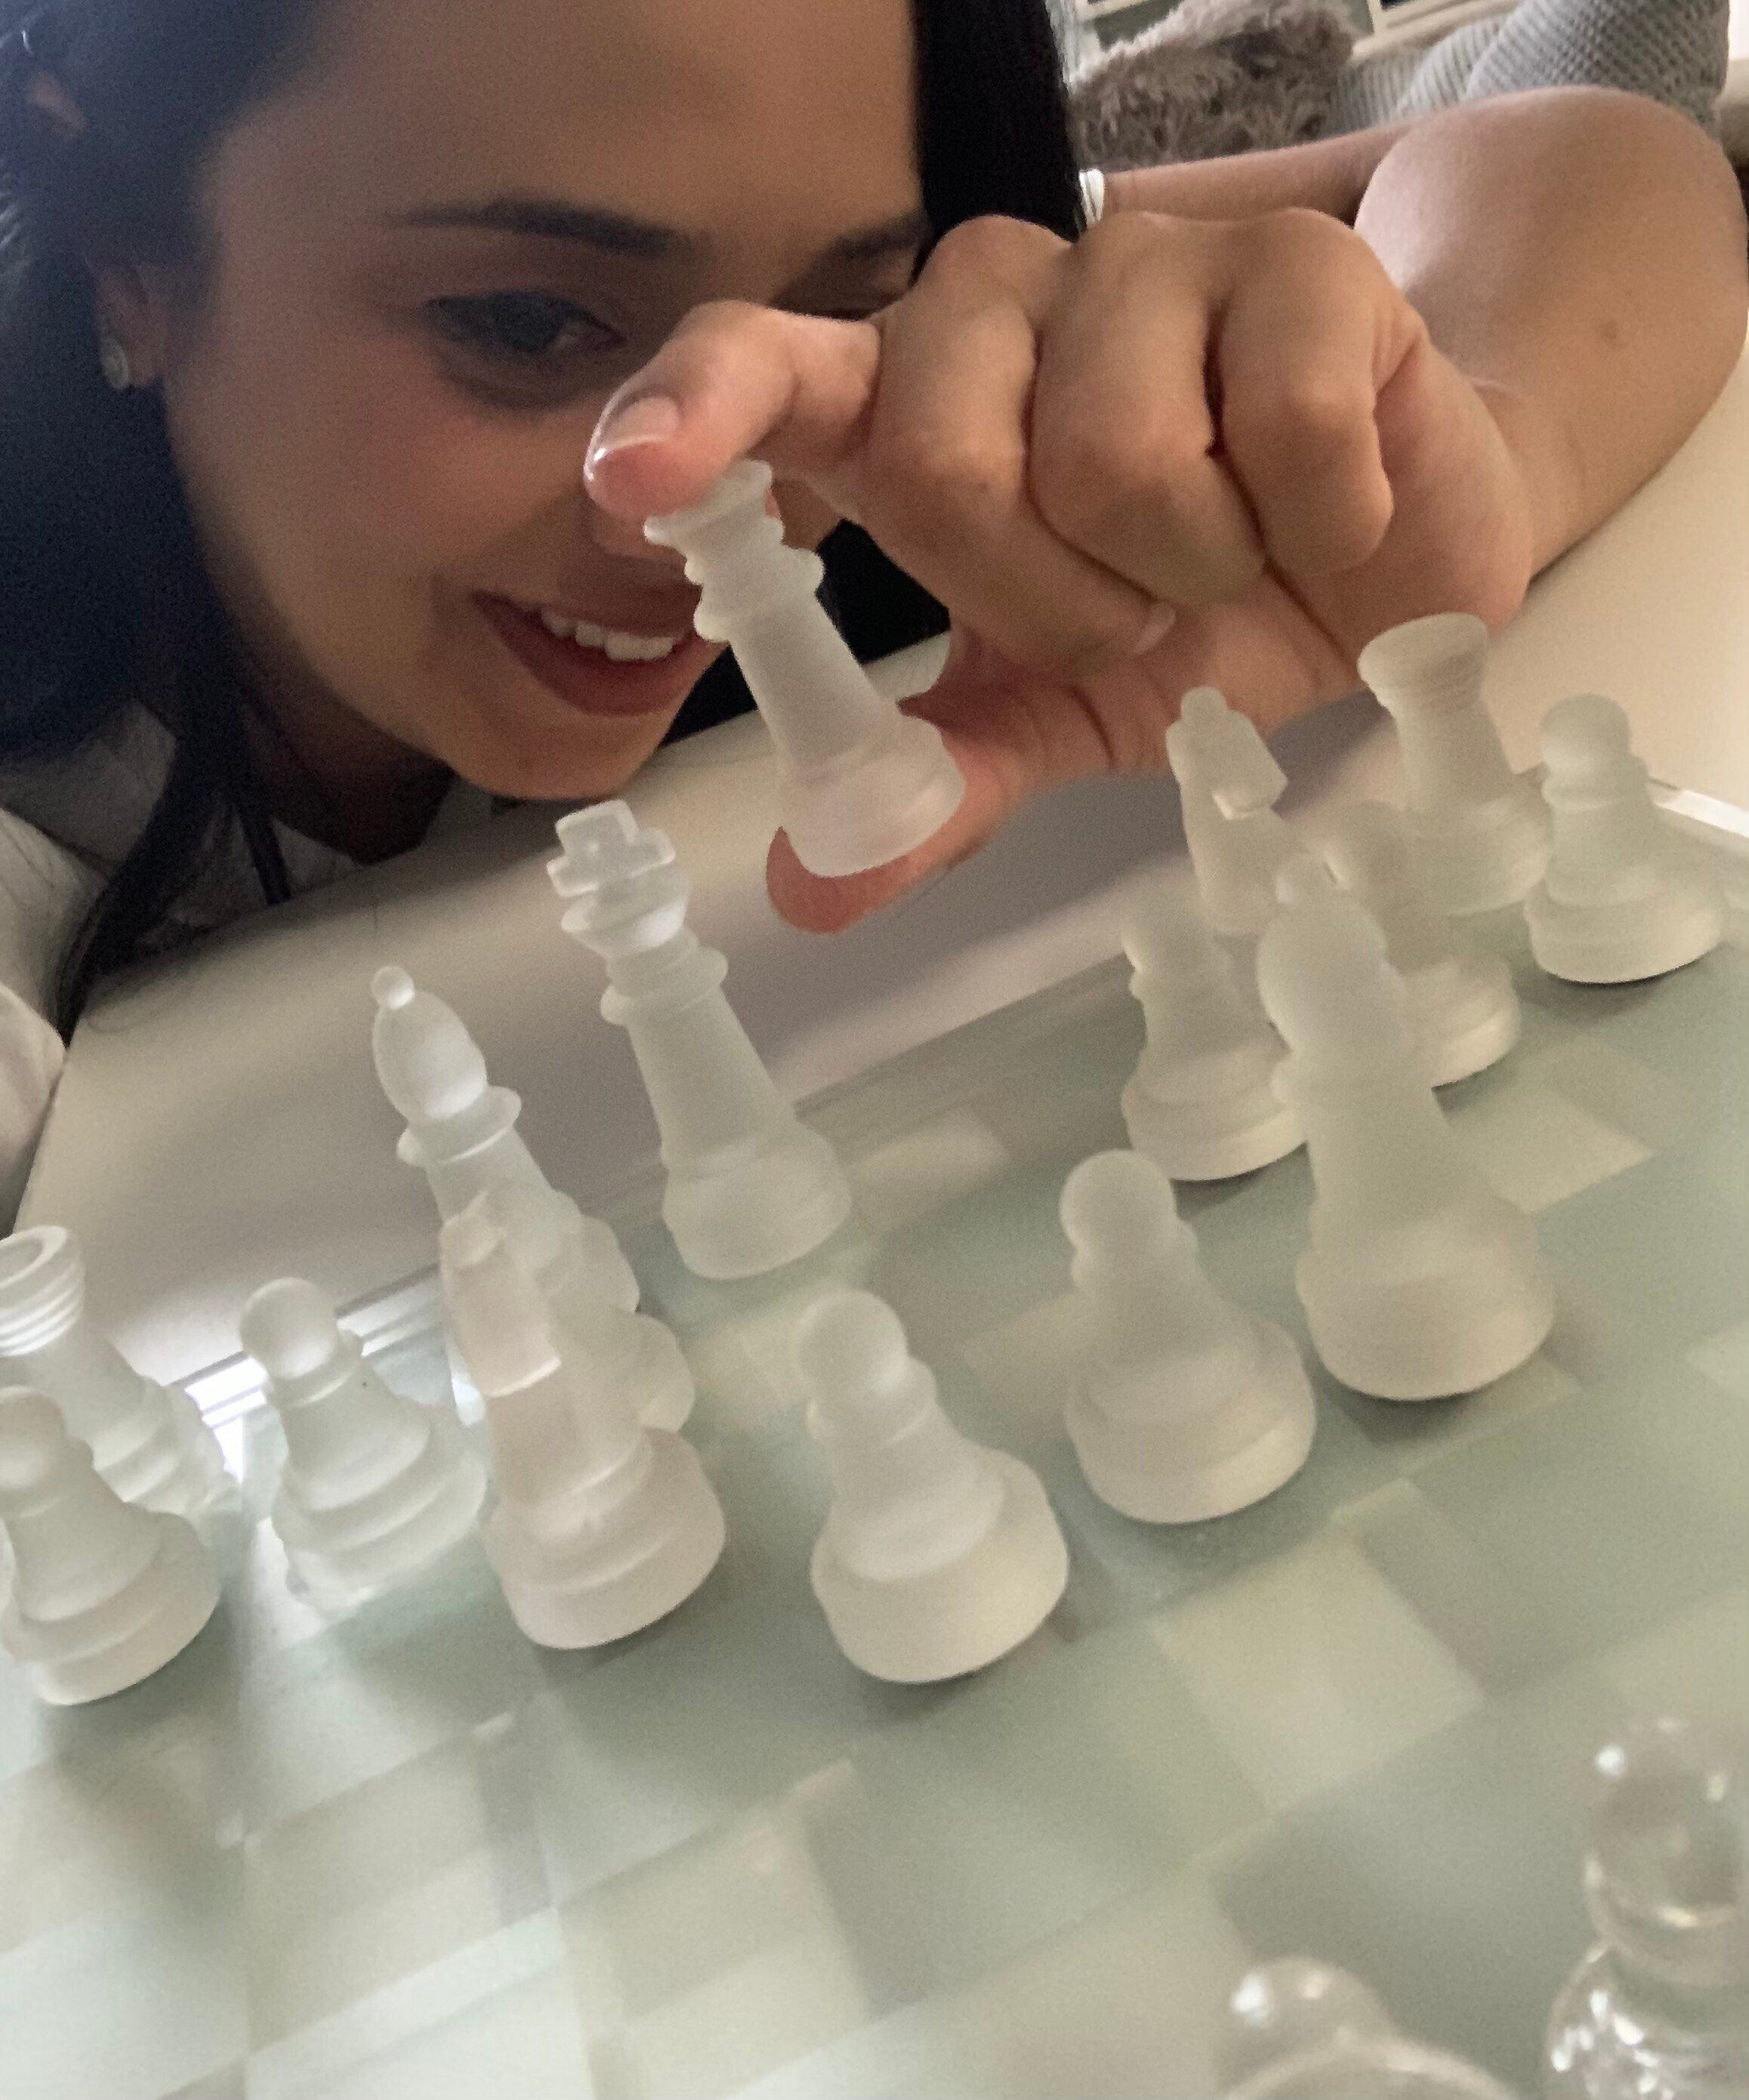 Popularidade da série 'O Gambito da Rainha' atrai novos praticantes de  xadrez - Estadão